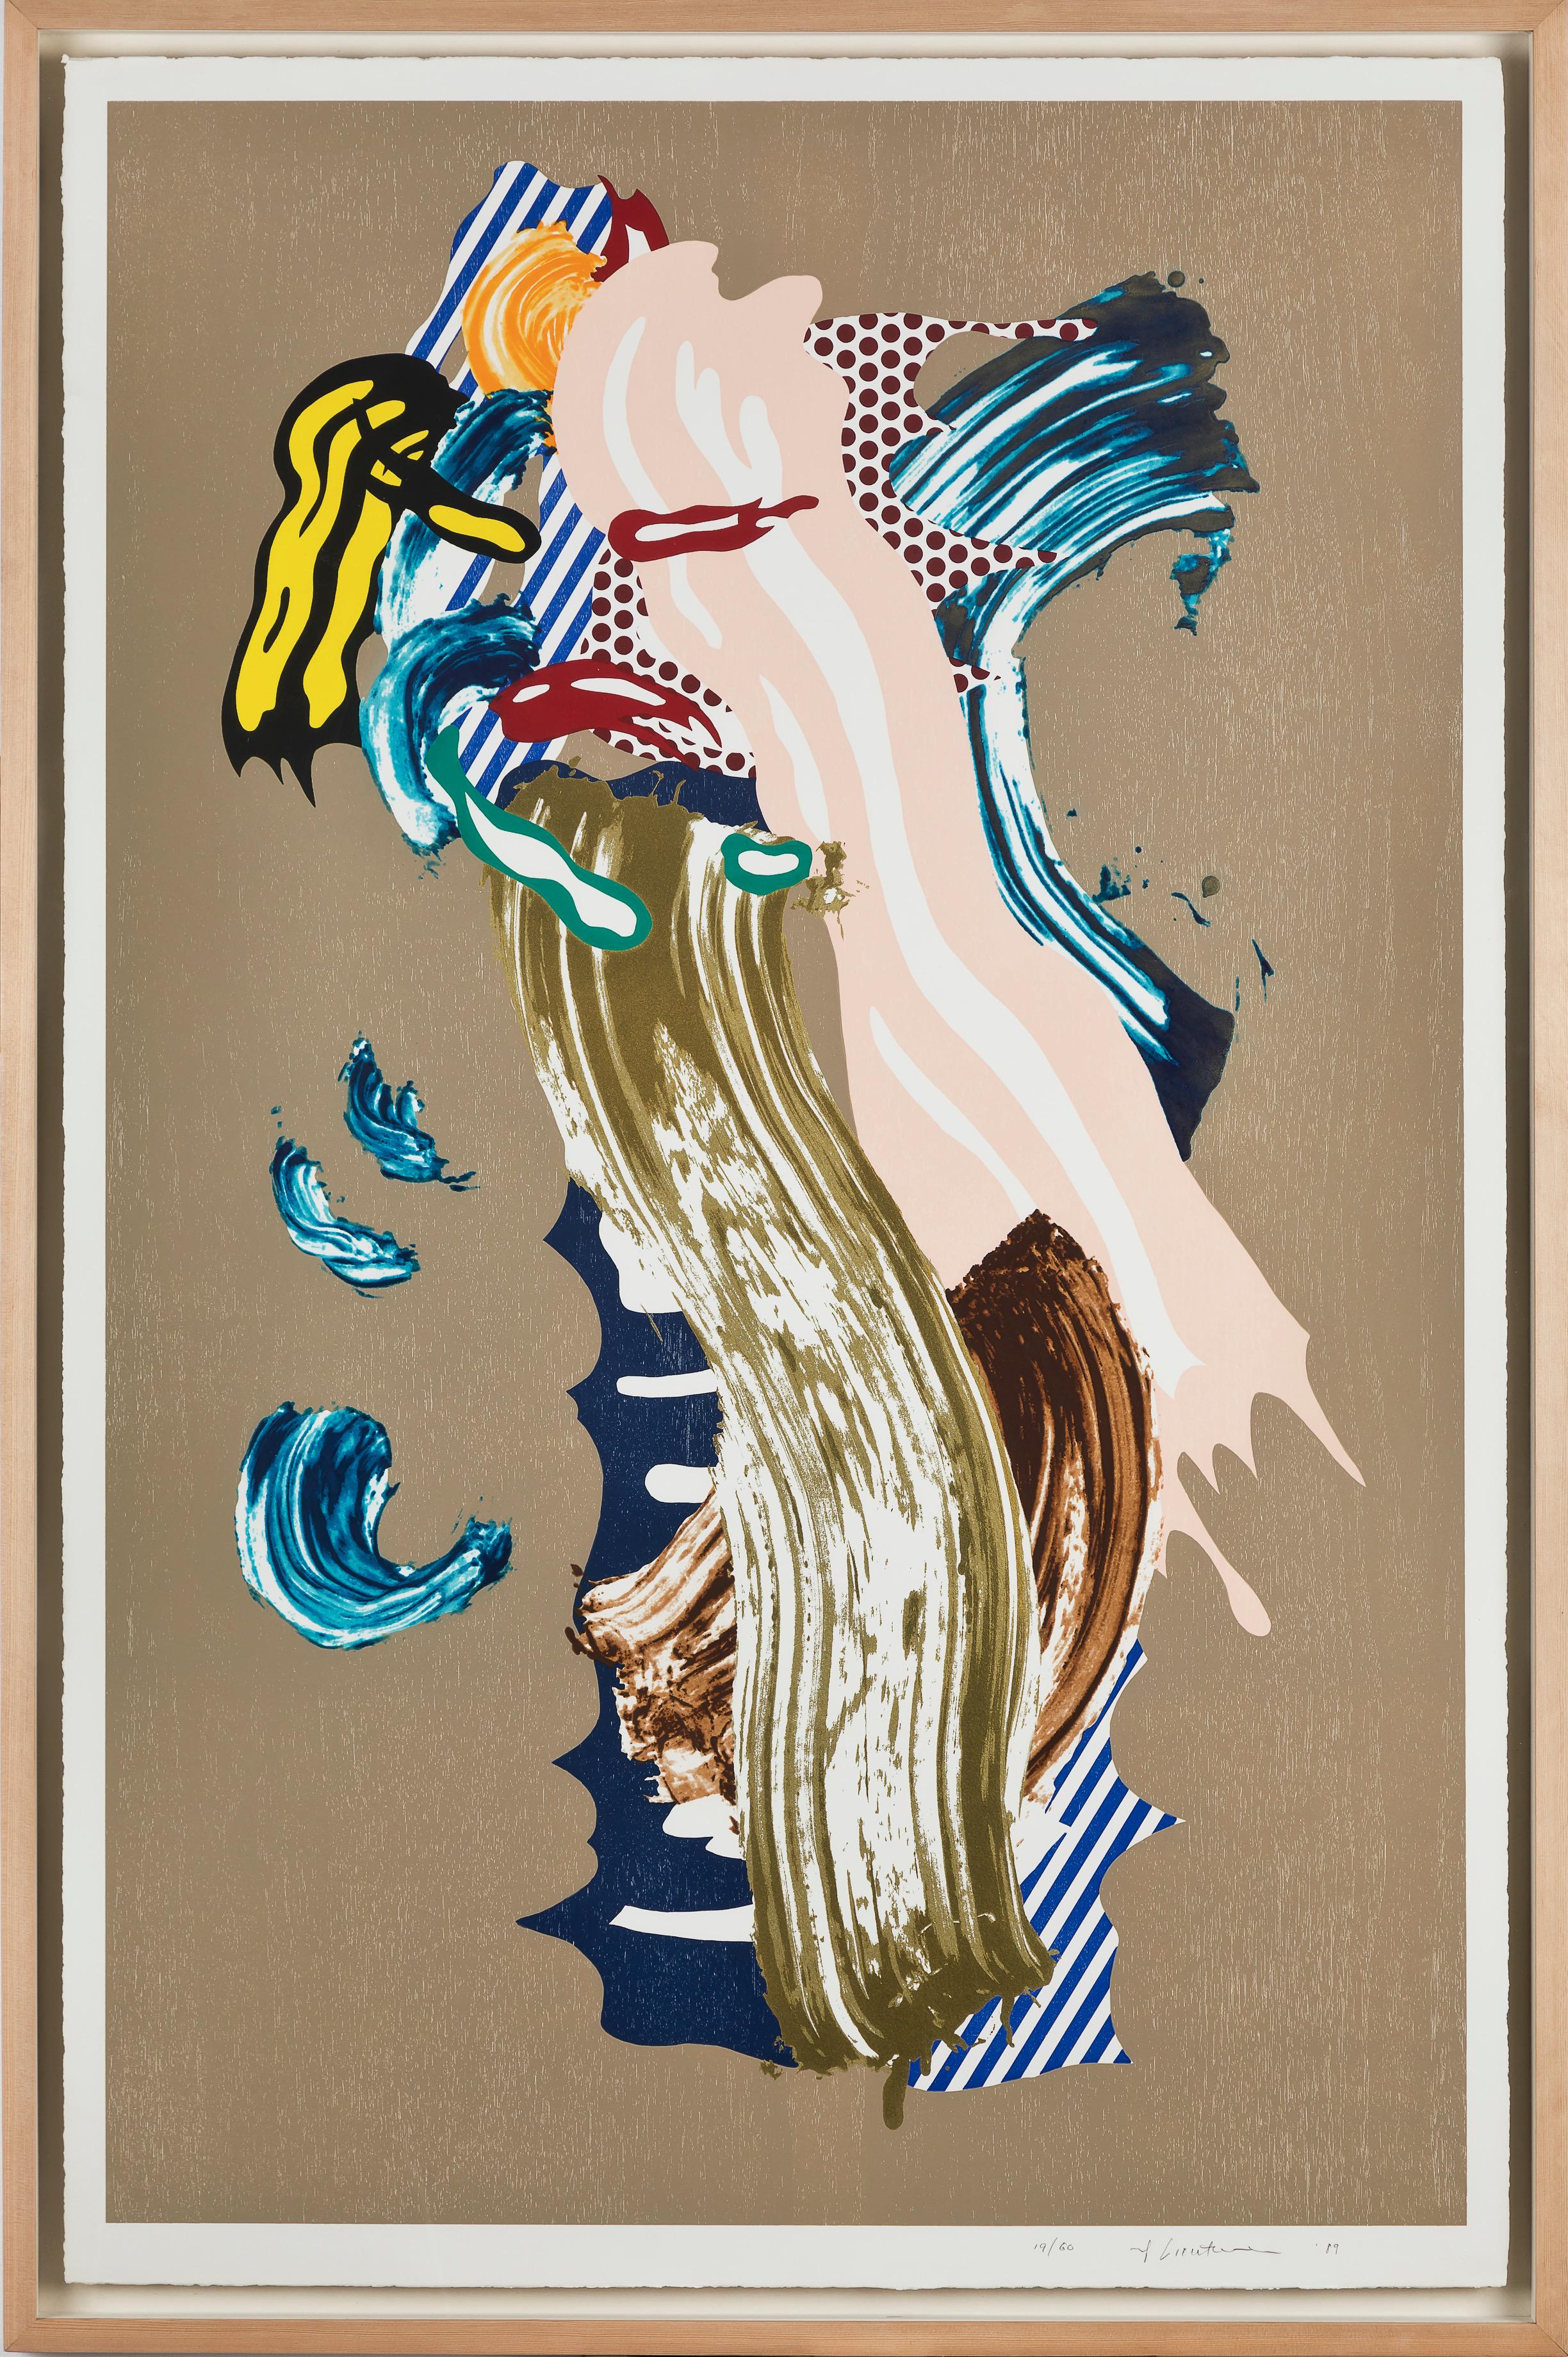 Blonde, from the Brushstroke Figures Series  - Print by Roy Lichtenstein